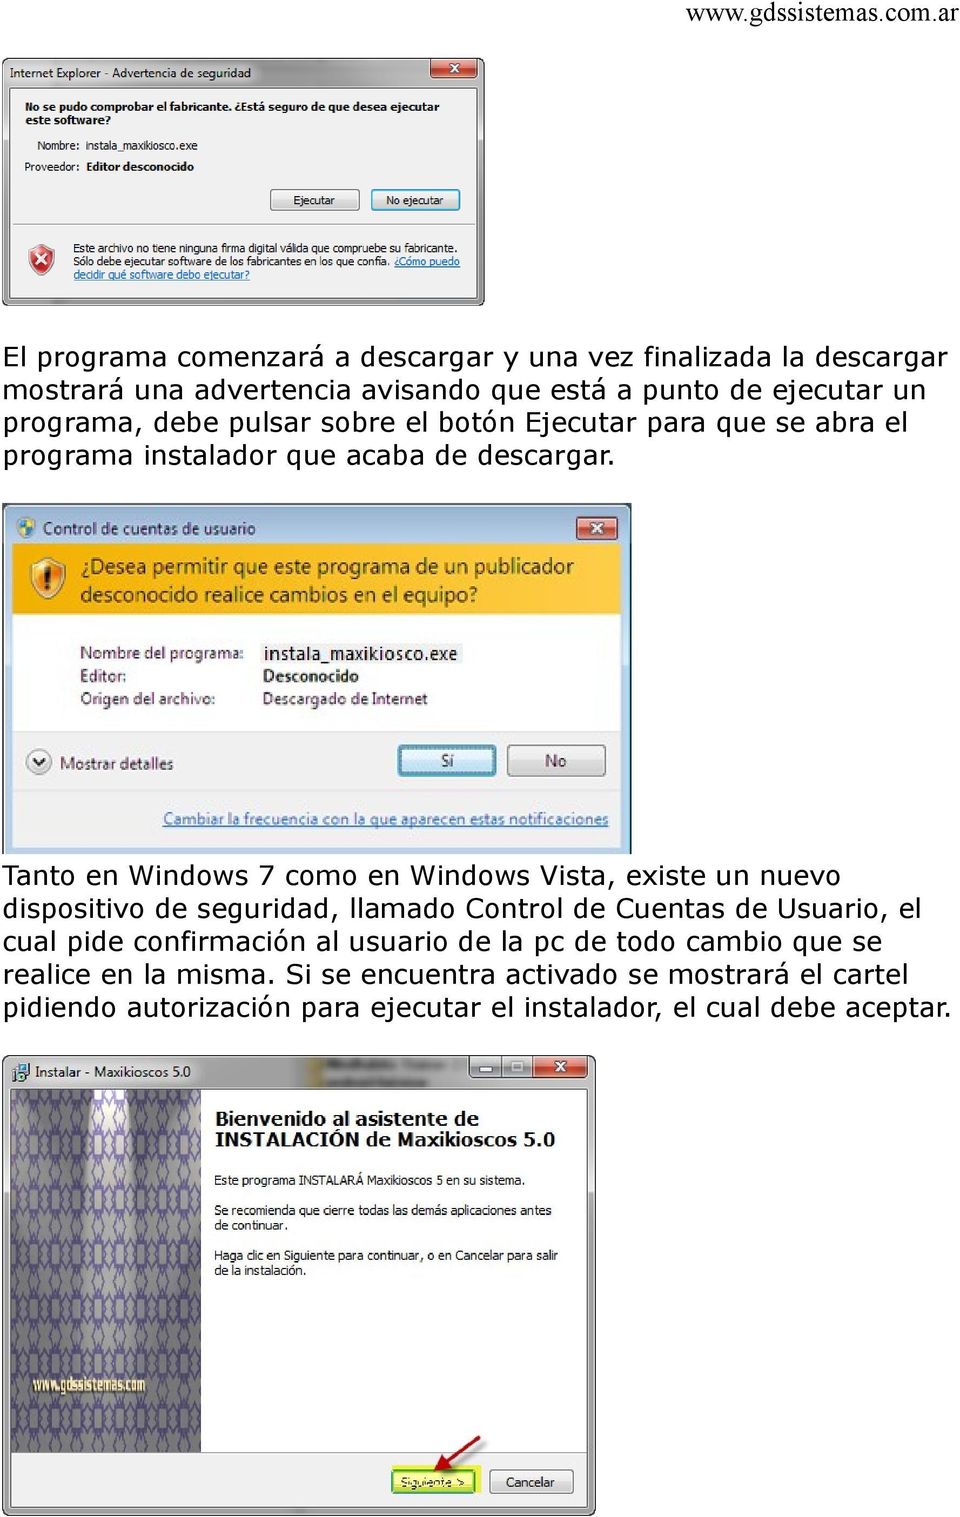 Tanto en Windows 7 como en Windows Vista, existe un nuevo dispositivo de seguridad, llamado Control de Cuentas de Usuario, el cual pide